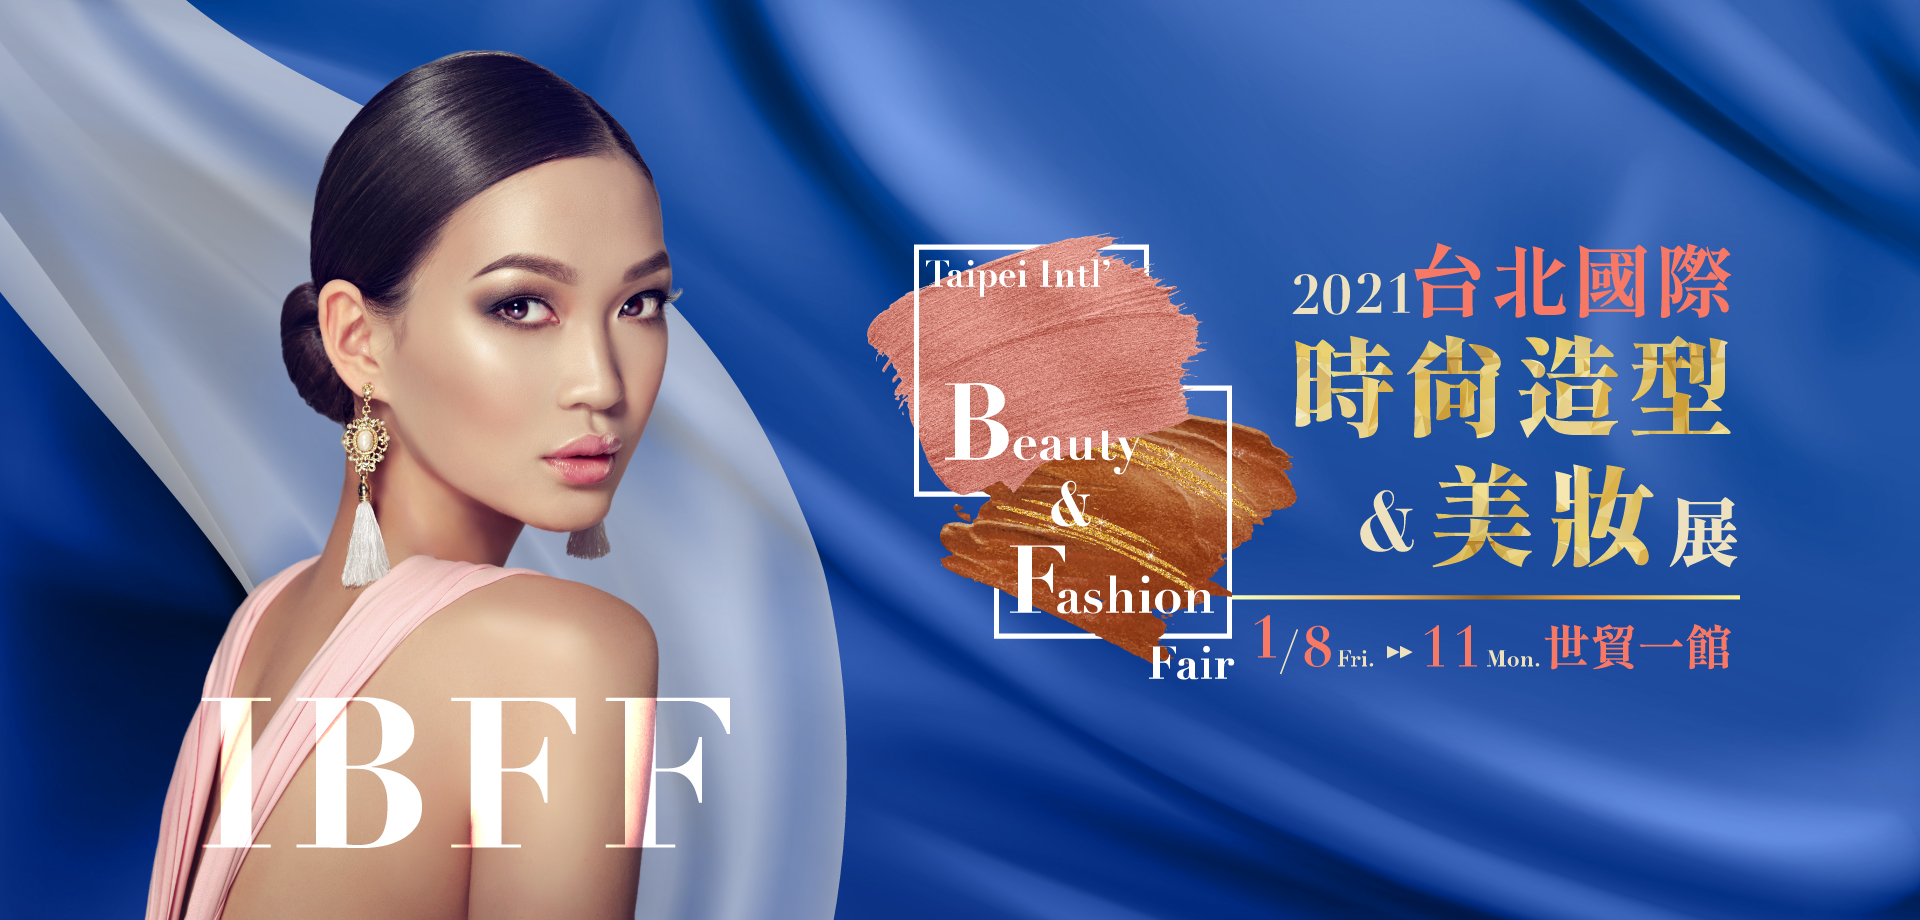 2021 1/8~1/11 台北國際時尚造型暨美妝展︱Taipei International Beauty & Fashion Fair